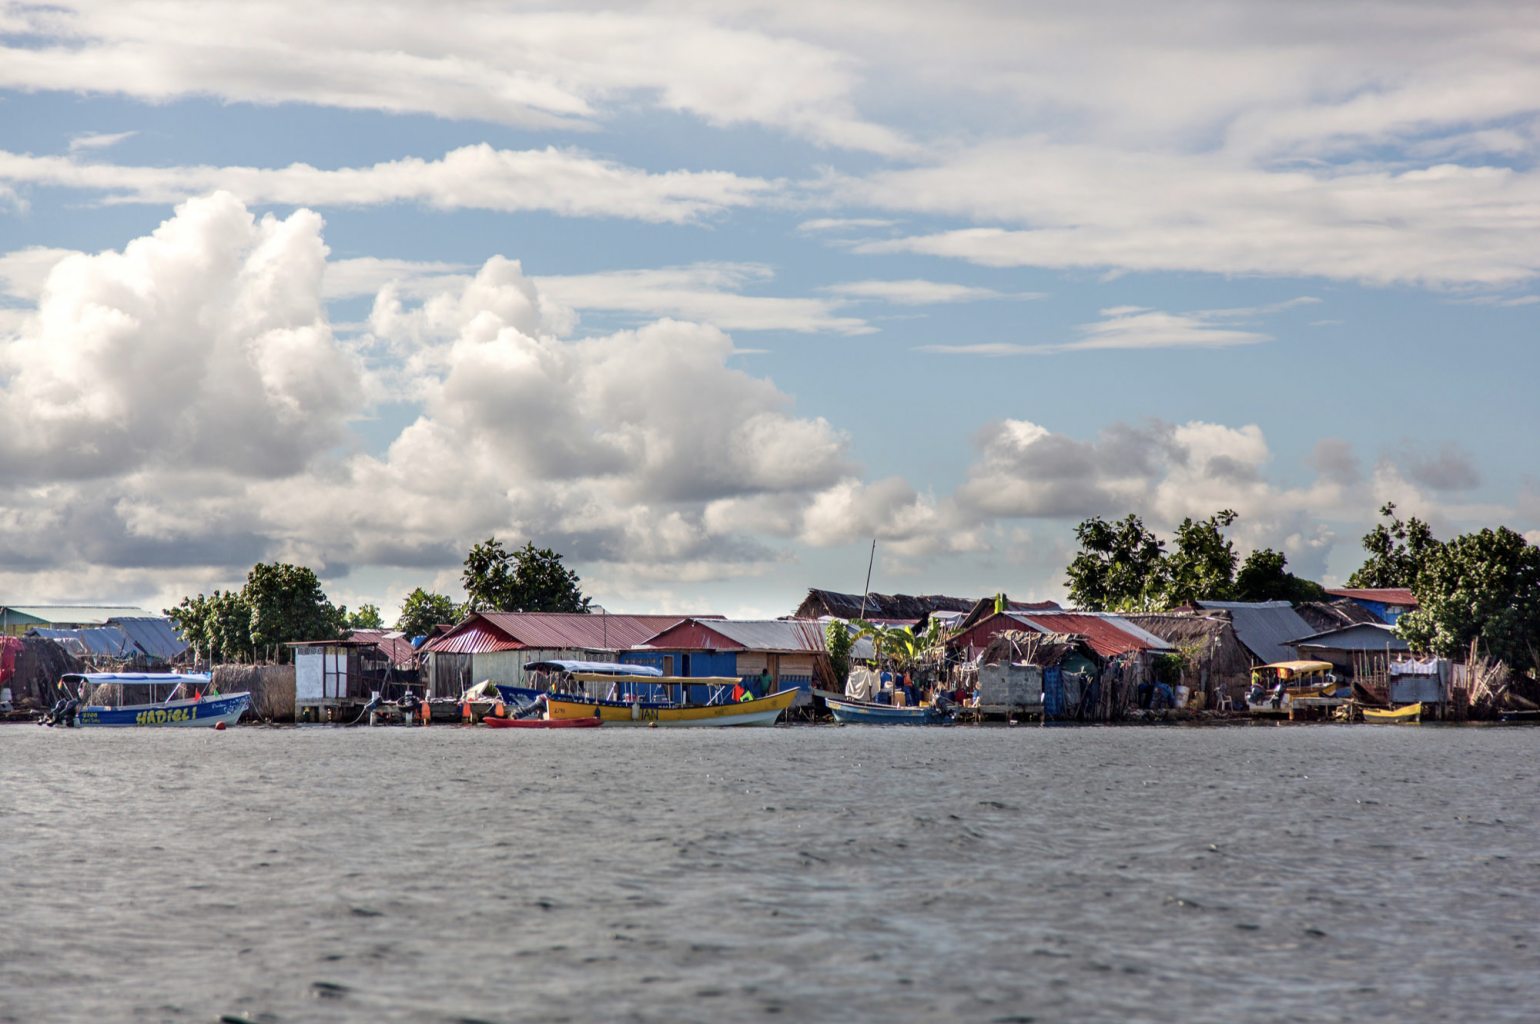 C'est la plus peuplée des îles San Blas. Il peut porter plusieurs noms : Congreja Island, Carti sugtupu, Gardi Sugdub, et près d'Islas Carti et Carti Tupile. À travers ses allées boueuses, on peux visiter une école, une église et croisé de nombreuses personnes effectuant des tâches étranges, des enfants jouant.
 
Les îles San Blas sont un groupe d'îles de l'archipel de San Blas, situé au nord-ouest de Panama face à la mer des Caraïbes. Il y a 378 îles dans l'archipel et elles sont dispersées dans une zone d'environ 100 miles carrés. Si vous quittez le Golfo de San Blas en bateau, vous entrerez dans la mer des Caraïbes. La majorité des 378 îles n'ont pas d'habitants, mais sur les plus grandes, vous trouverez les gentils indigènes connus sous le nom de Kuna. Ces personnes peuvent être trouvées sur les plus grandes îles habitées; Aguja Island, Guanidup Island, Chichimei, Yandup Island et El Porvenir. Vous vous demandez peut-être qu'est-ce que le san blas ? San Blas est un territoire autonome du Panama officiellement appelé Kuna Yala.